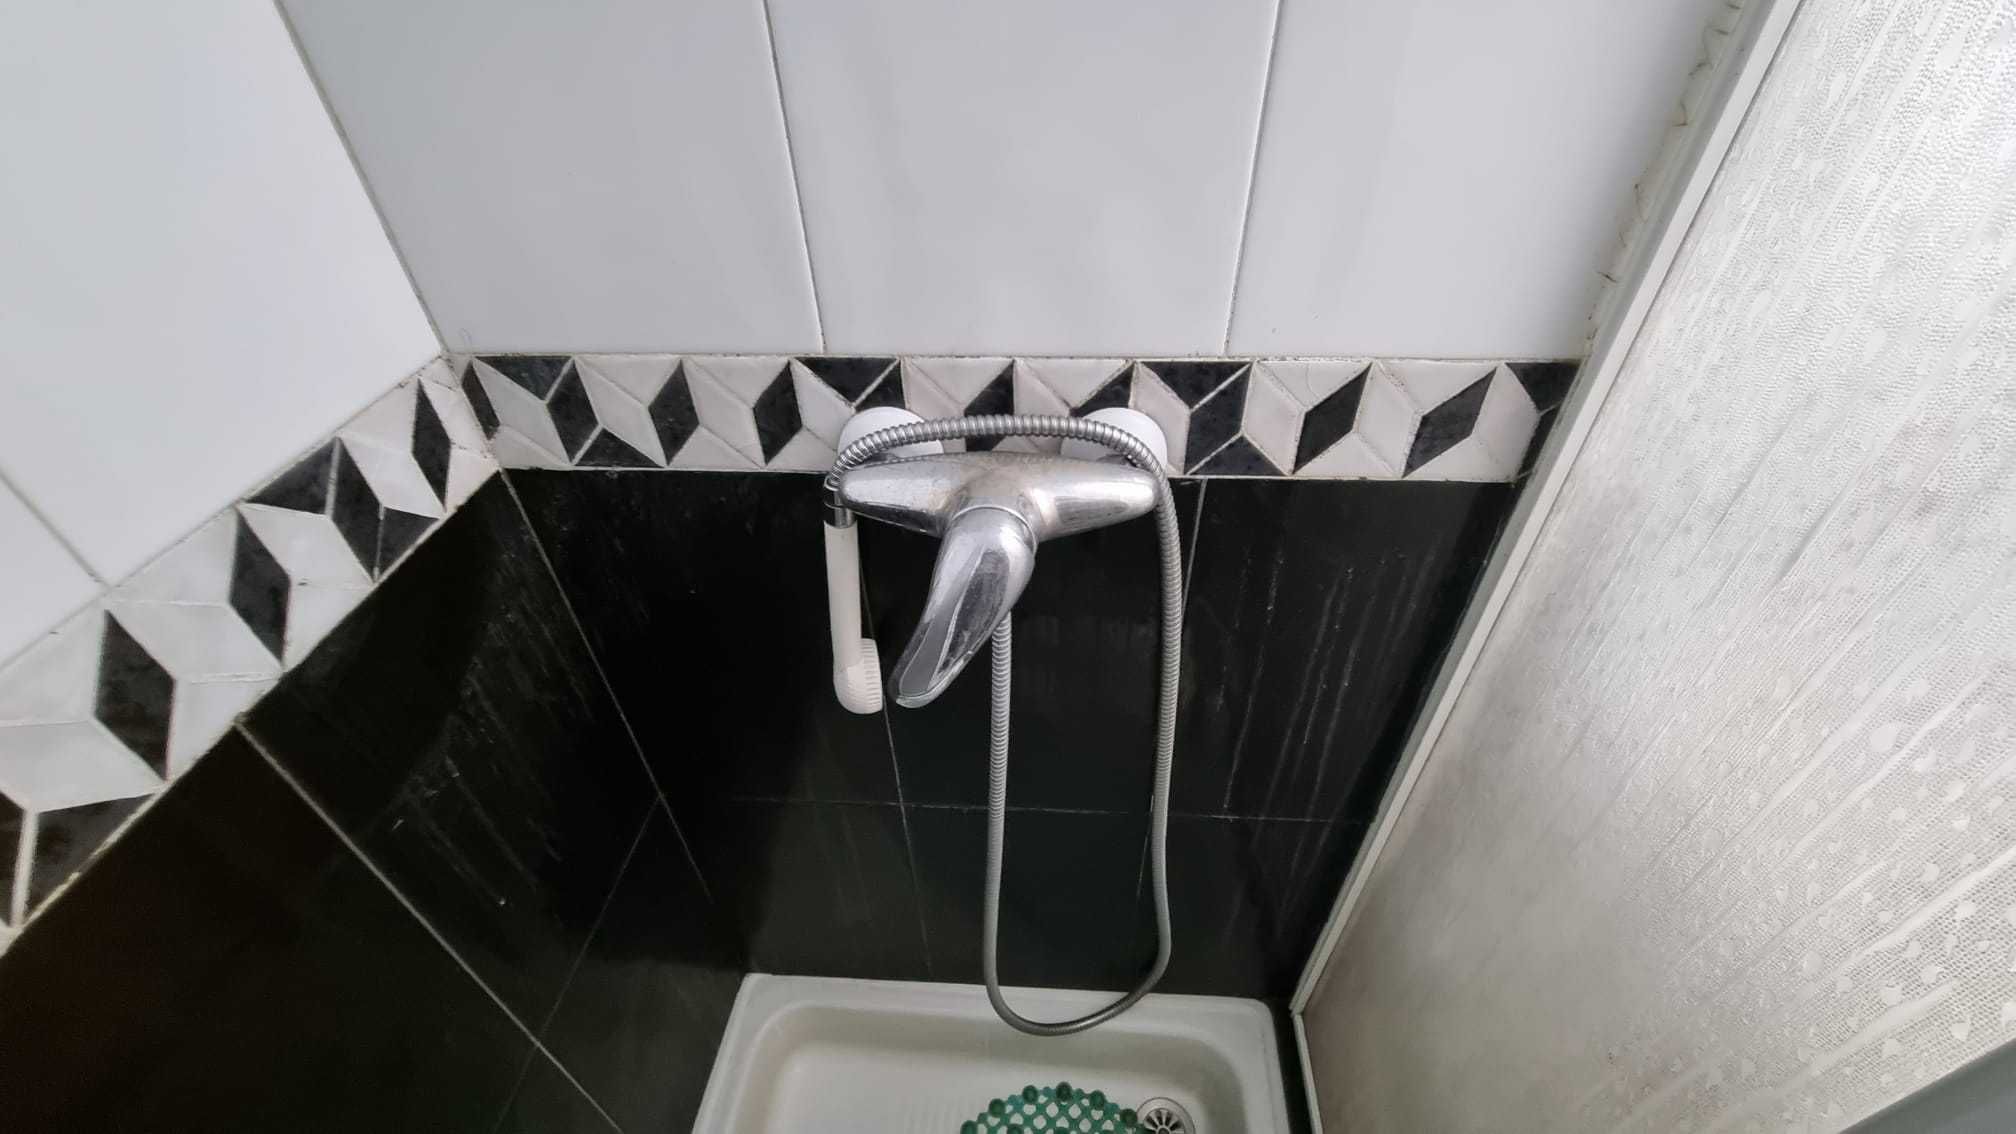 Cabine de duche ( 75x75 ) com cifam e válvula + torneira misturadora